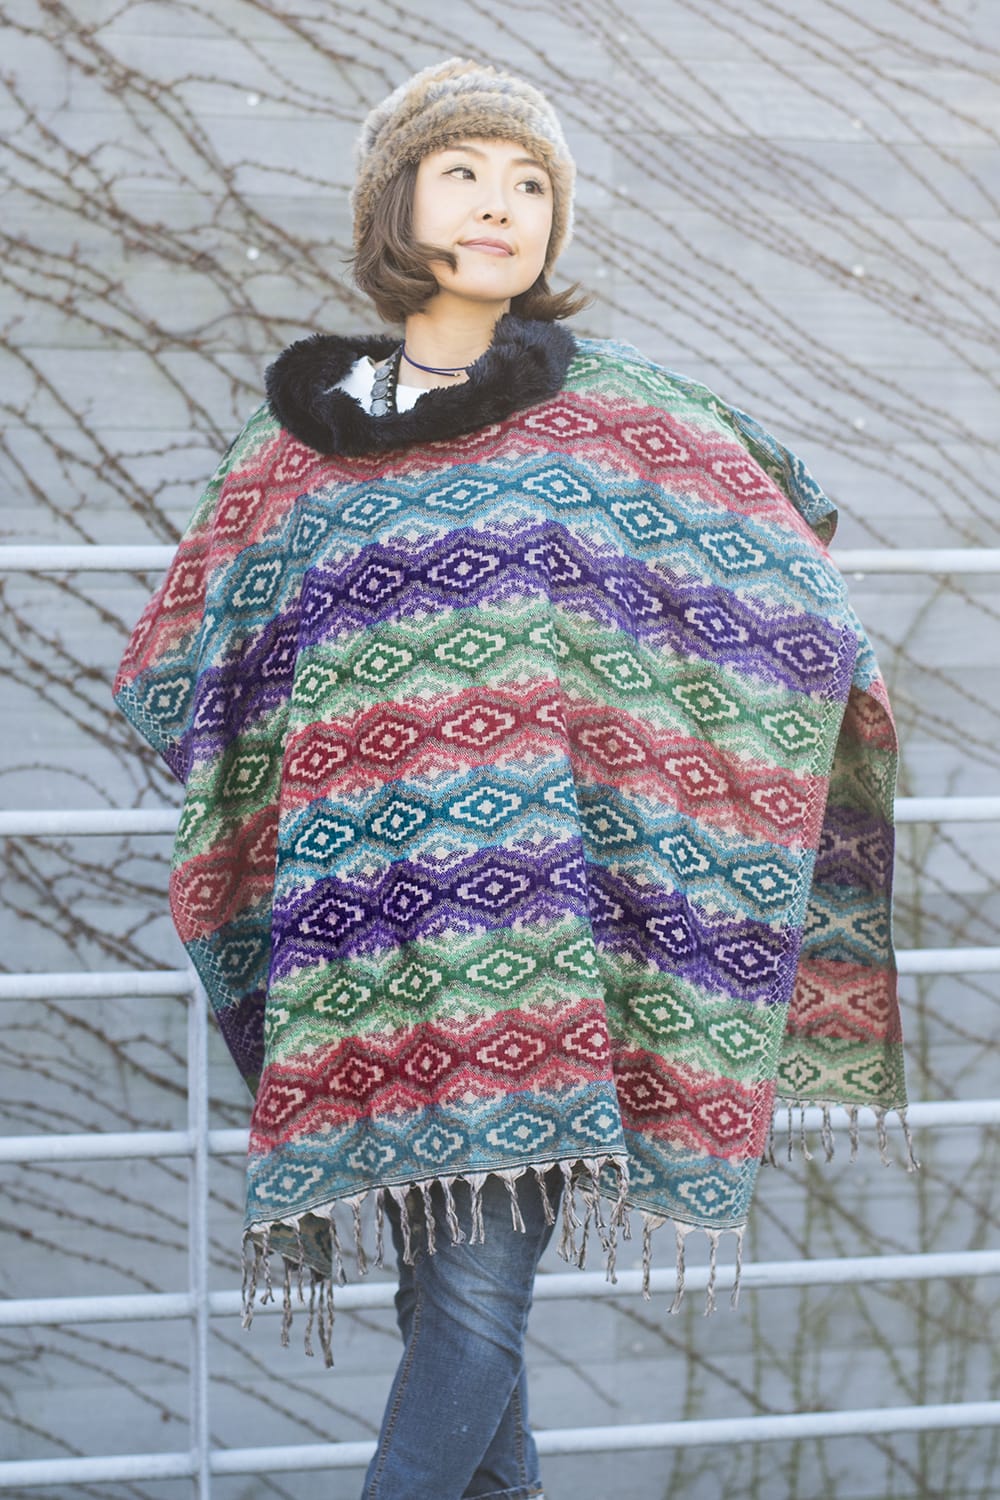 【送料無料】 ドットパターンのふわふわポンチョ / ドット柄 セーター TIRAKITA(ティラキタ) エスニック ネパール アジア エスニック衣